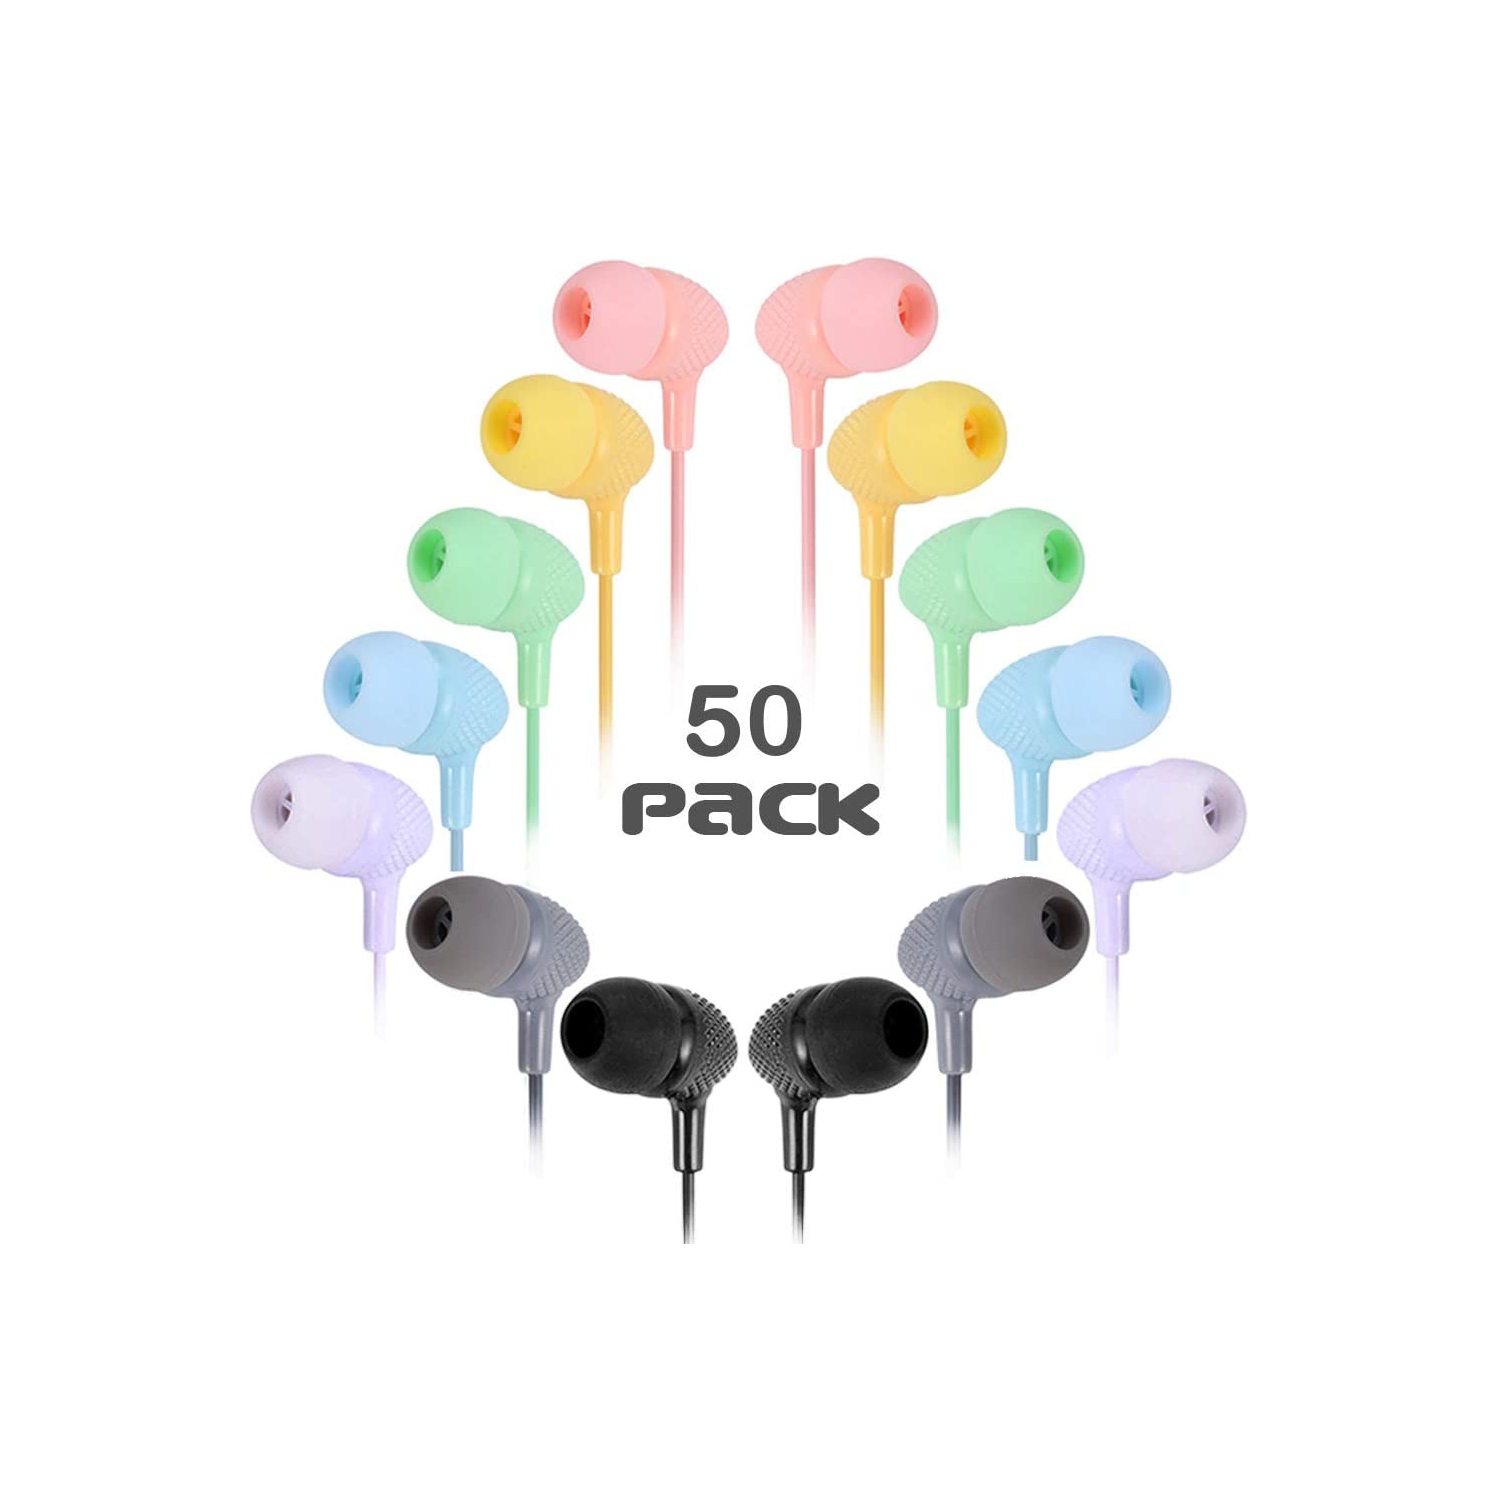 Dolaer Bulk Earbuds Headphones 50 Pack Multicolor for Classrooms Kids, Wholesale Durable Students Earphones Perfect for K12 Schools Teens Kindergarten Children Gift and Adult (Mixe